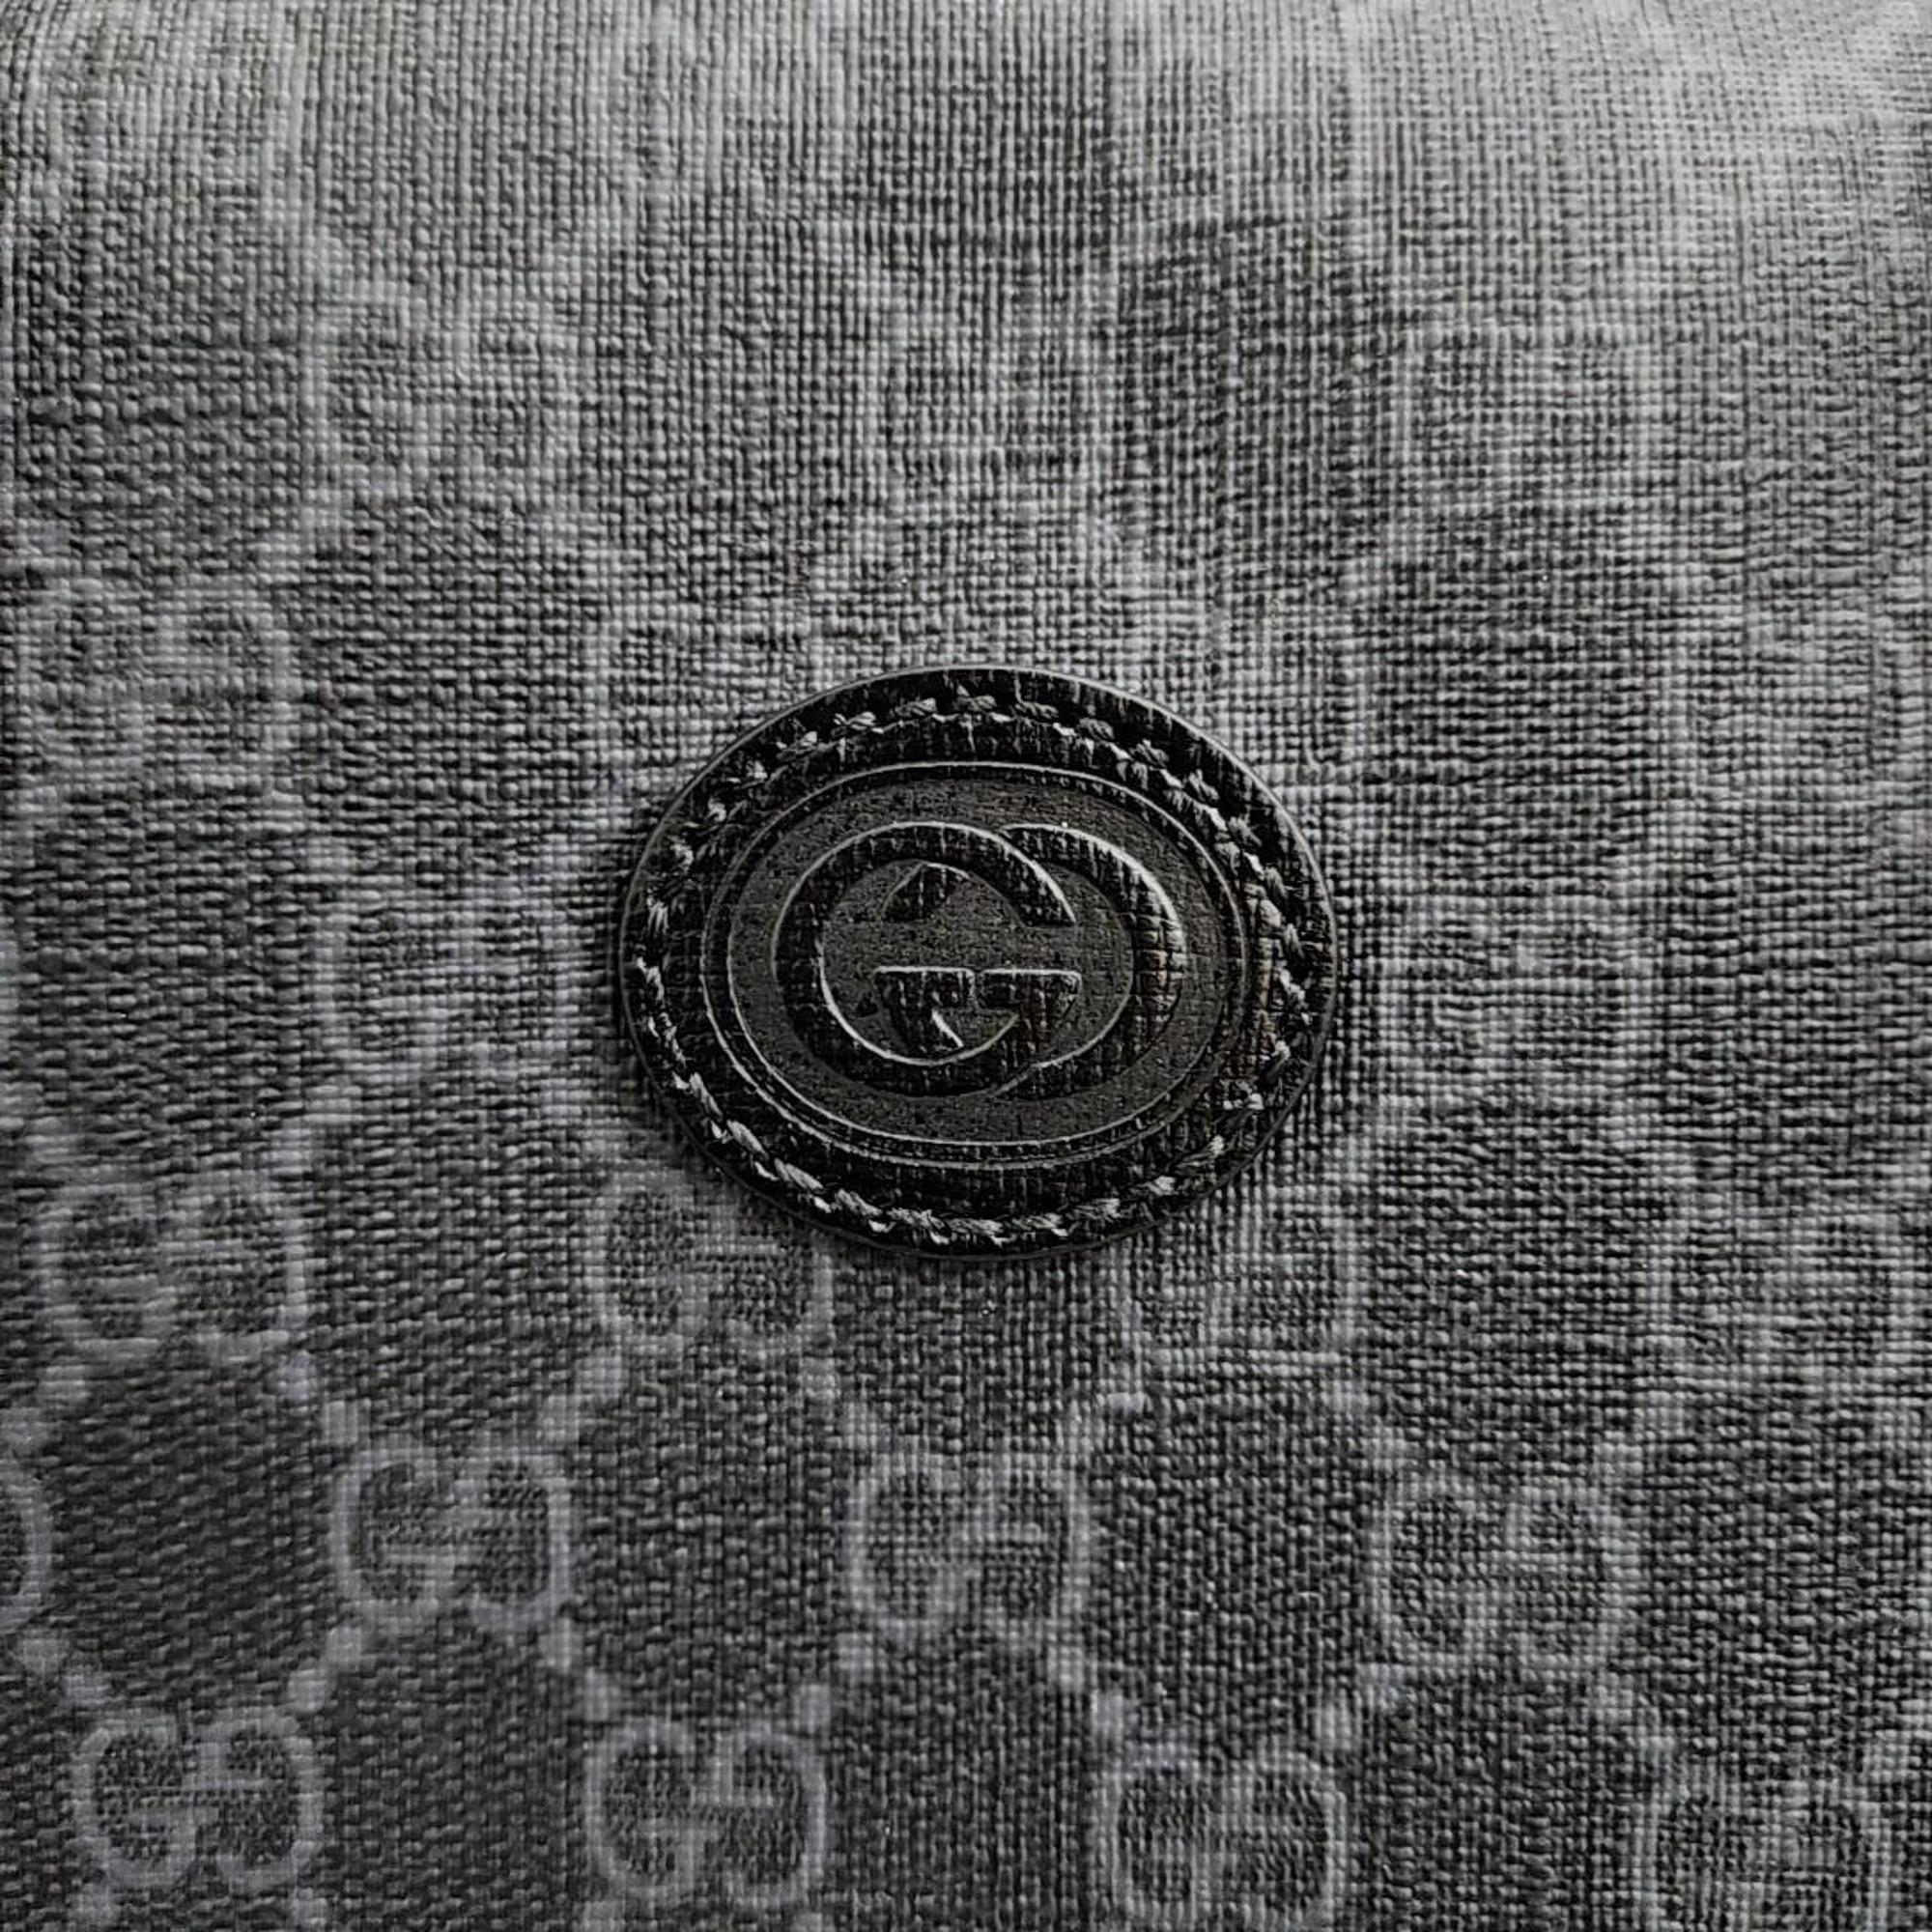 Gucci Interlocking G Duffel Bag (696014)